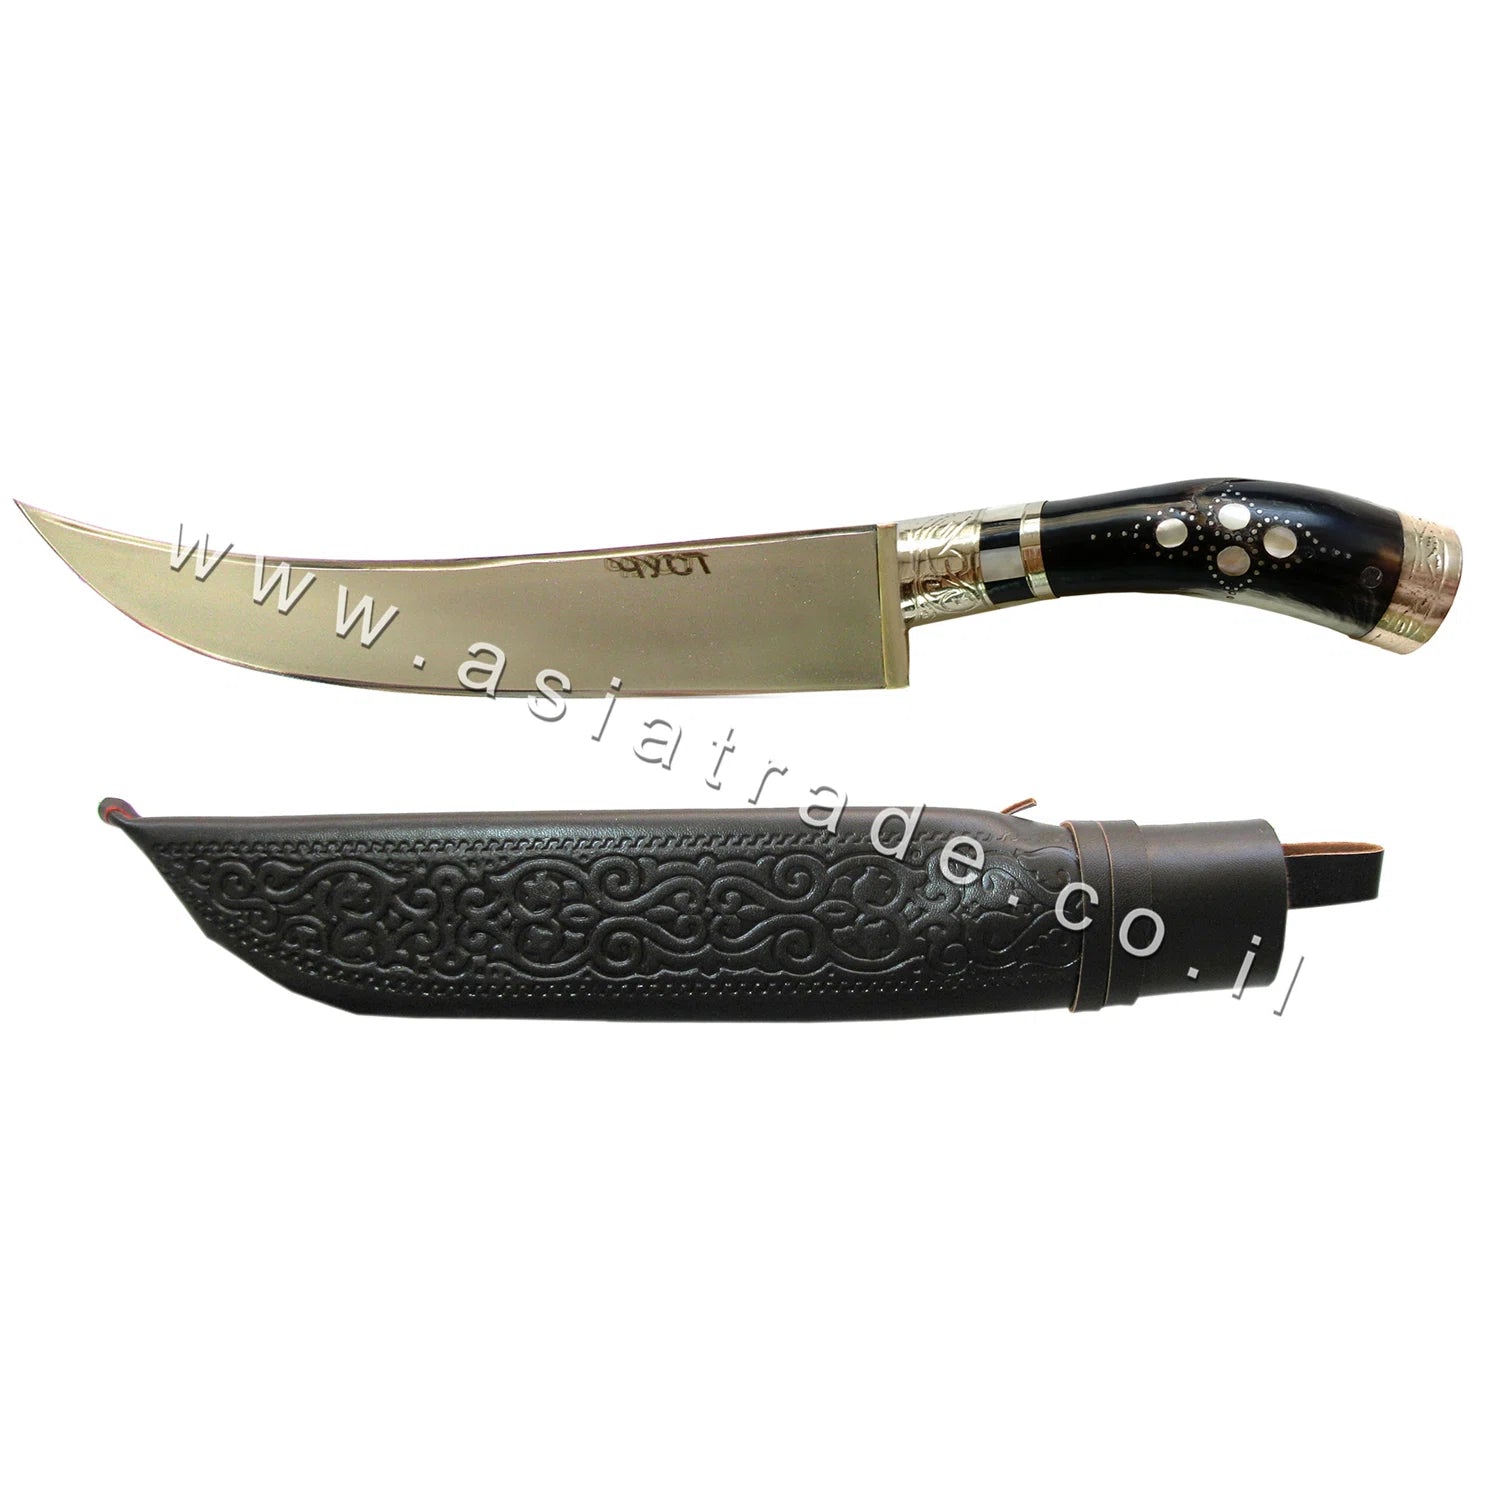 Узбекский нож ручной работы, Пчак - CHUST 1121